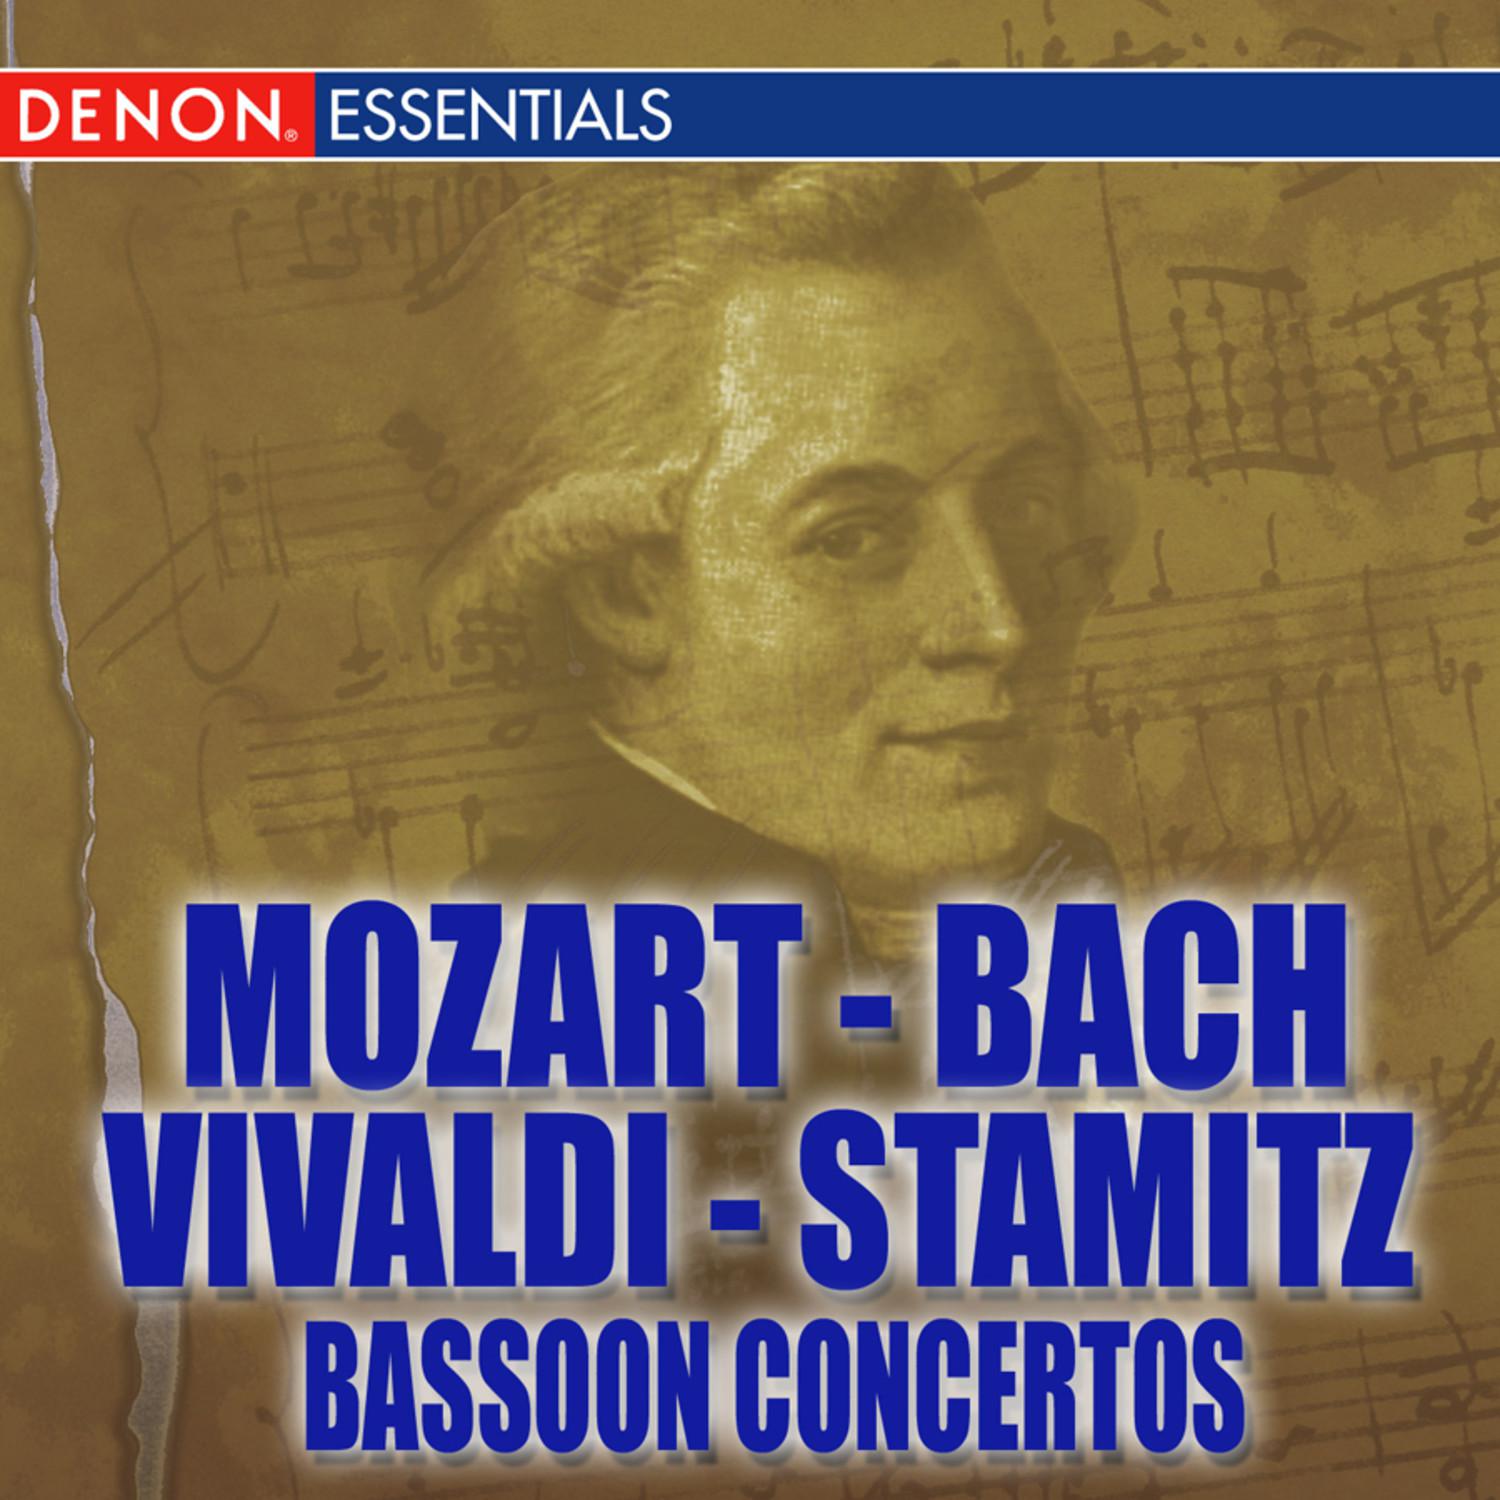 Concerto for Bassoon and Orchestra in E-Sharp Major: III. Allegro ma non troppo